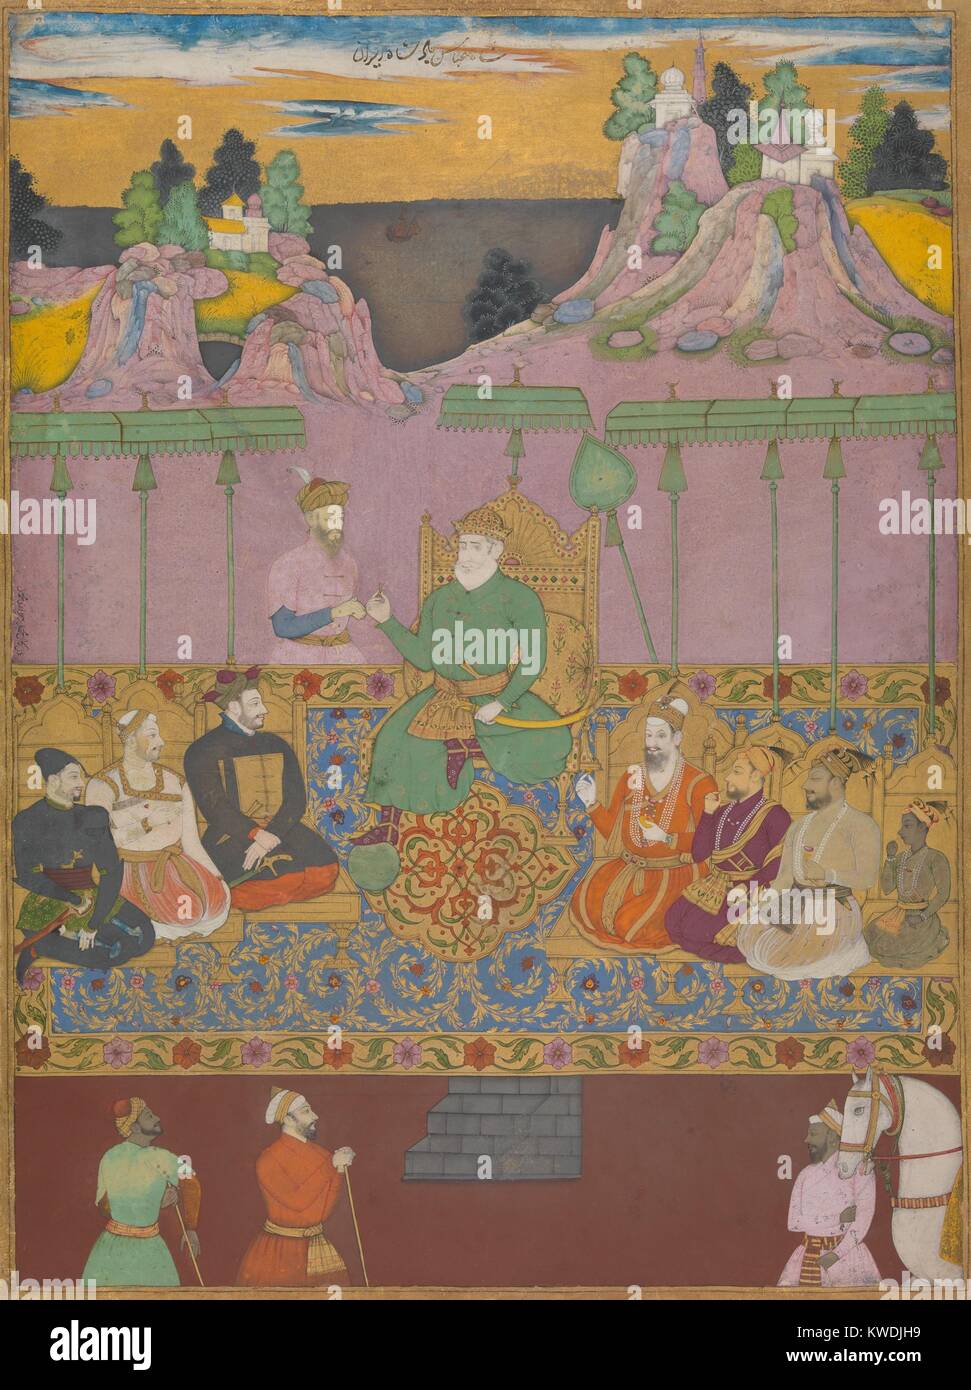 Das Haus von BIJAPUR, von Chand, Muhammad 1670-80 s, Indische Malerei, Tusche, Aquarell auf Papier. Dynastische Portrait von allen neun Adil Shahi Sultane, die Bijapur, Deccan Sultanat von c. ausgeschlossen Von 1550 bis 1686, als es durch das Mughal Reiches erobert. Der letzte Sultan, Sikandar Adil Shah, ist der Junge ganz rechts. In der Mitte, den Schlüssel der Legitimität von Isma'il, Gründer der Dynastie der Safawiden im Iran, zu Yusuf, Gründer der Bijapur Dynastie (BSLOC 2017 16 28) Stockfoto